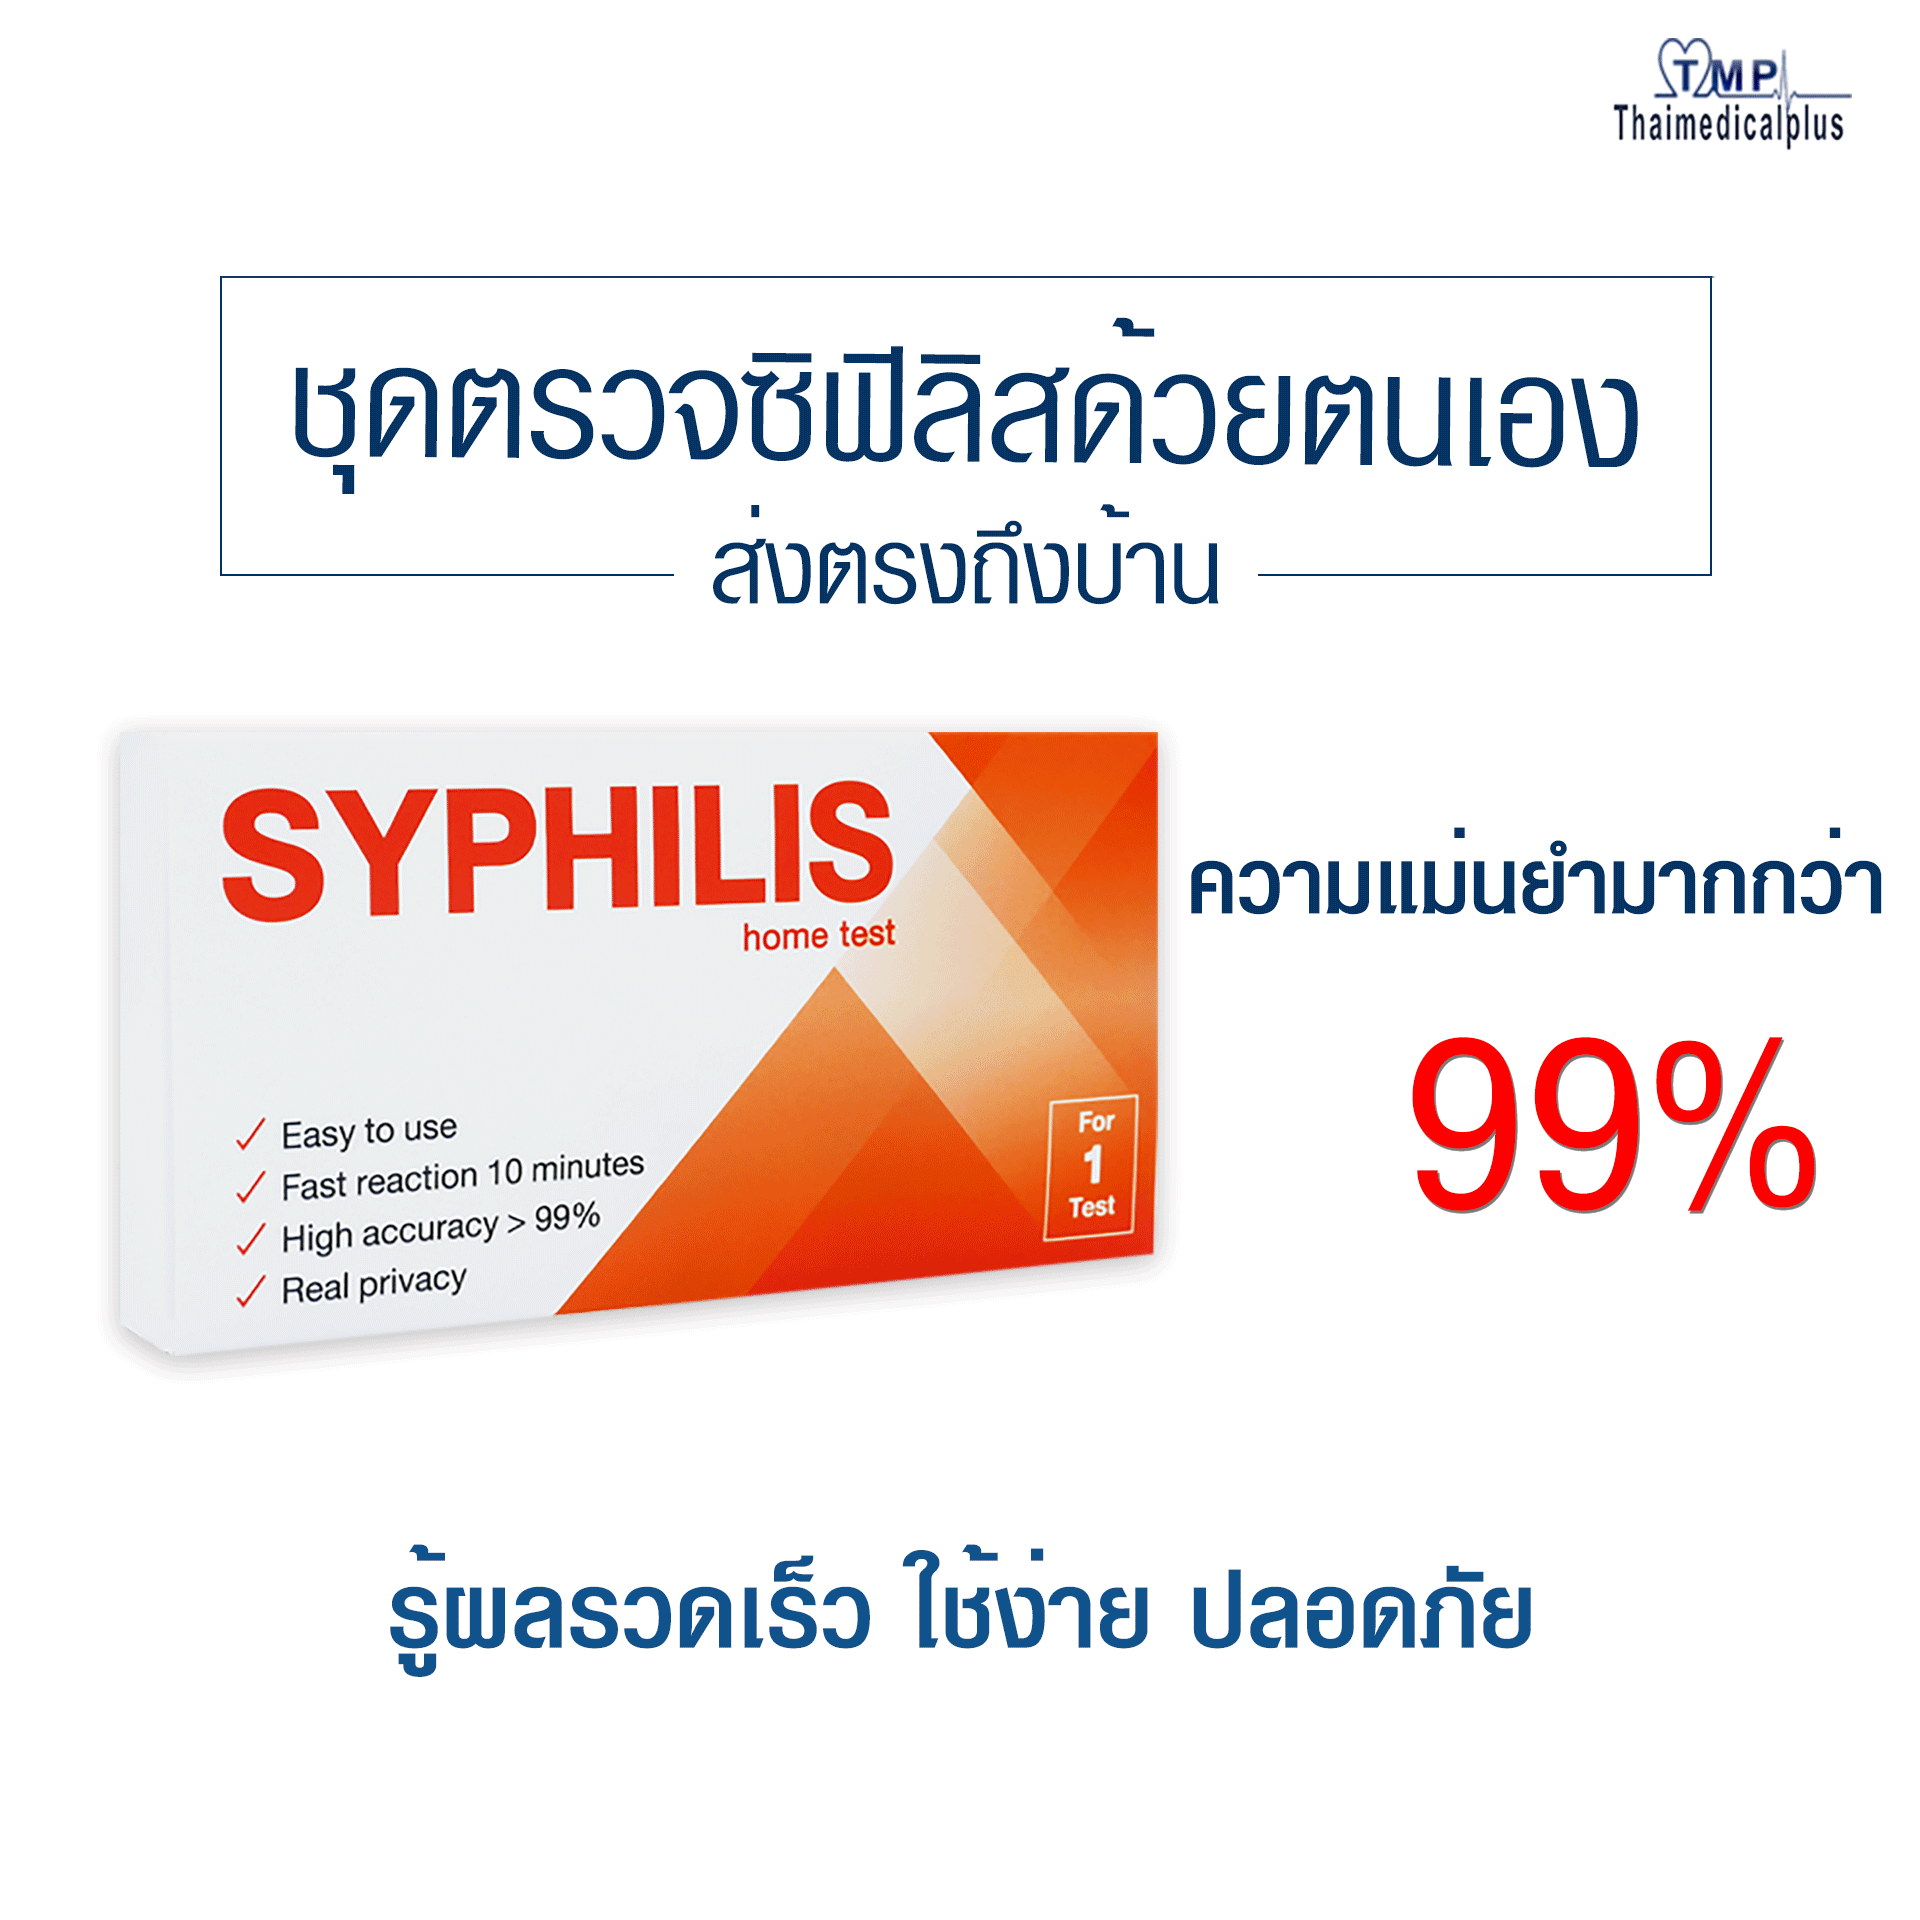 แนะนำชุดตรวจHIV และ Syphilis